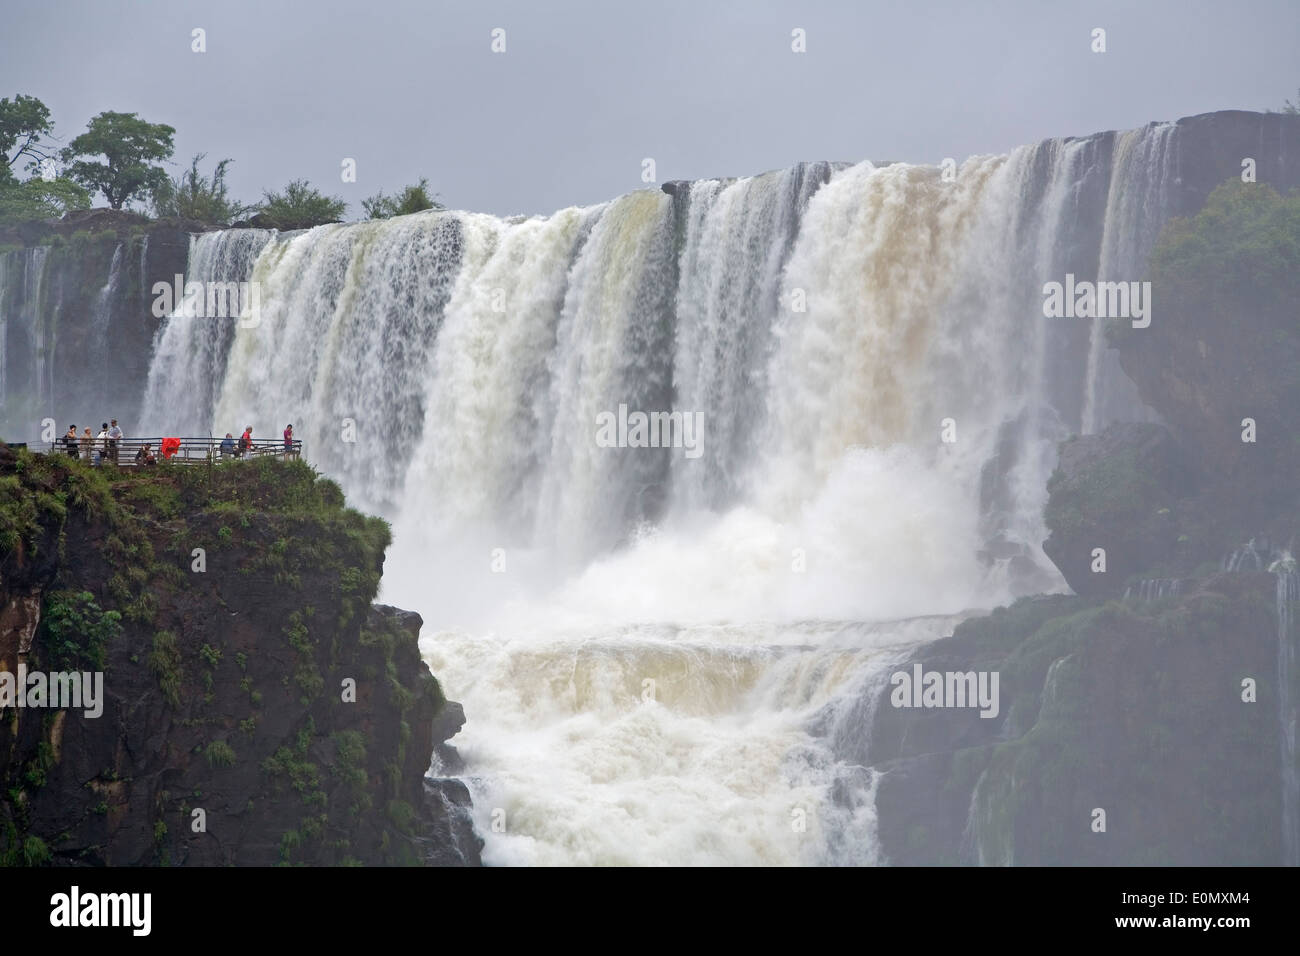 Les gens sur l'île de San Martin donnant sur San Martin de cascades, Parc National de l'Iguazu, Argentine Banque D'Images